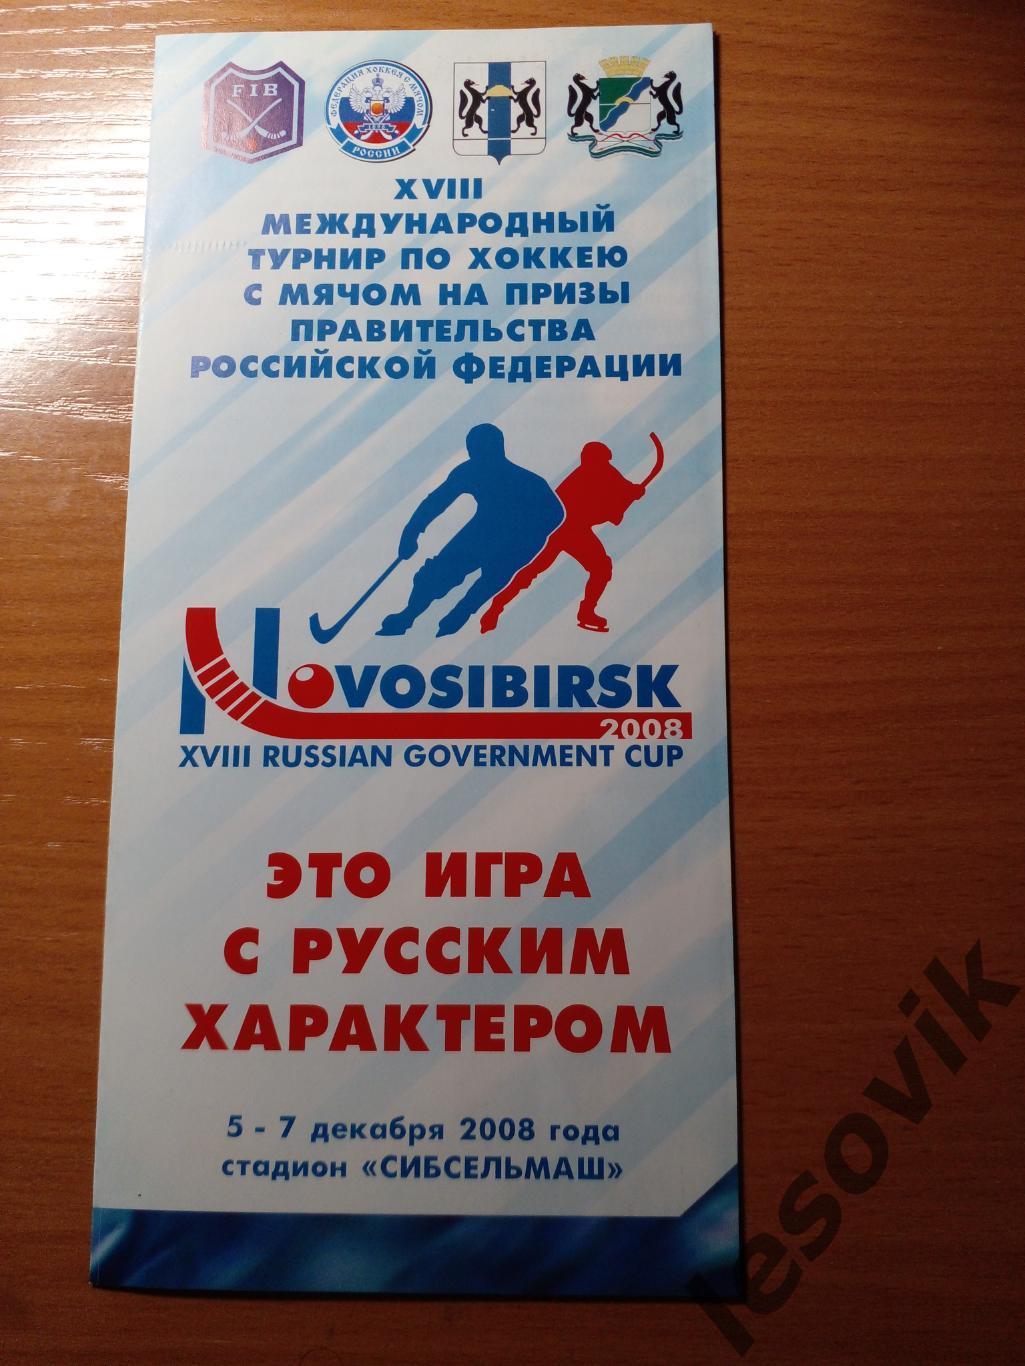 Международный турнир по хоккею с мячом на призы Правительства РФ 2008